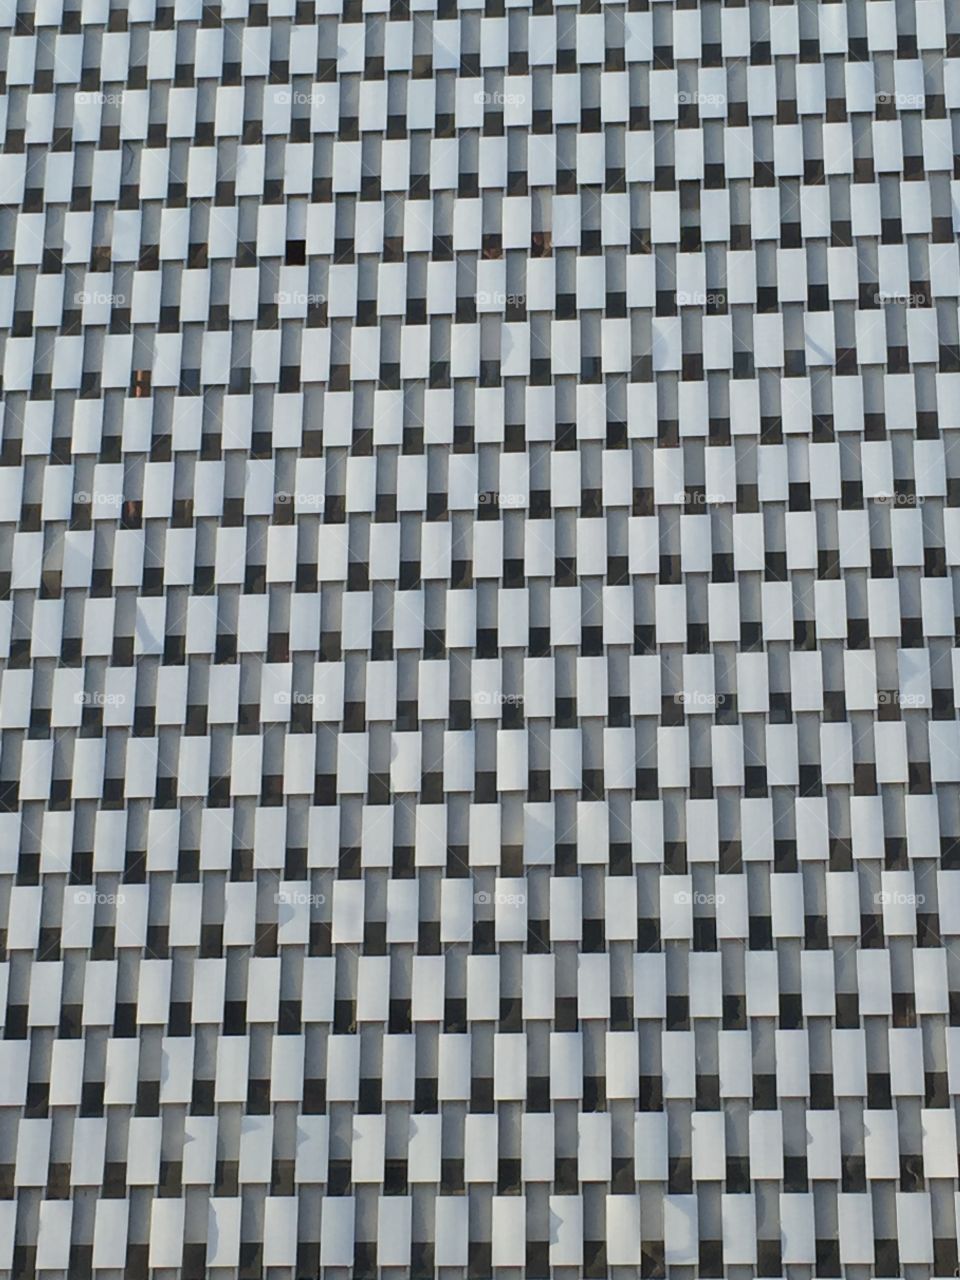 Bay City MI Building texture